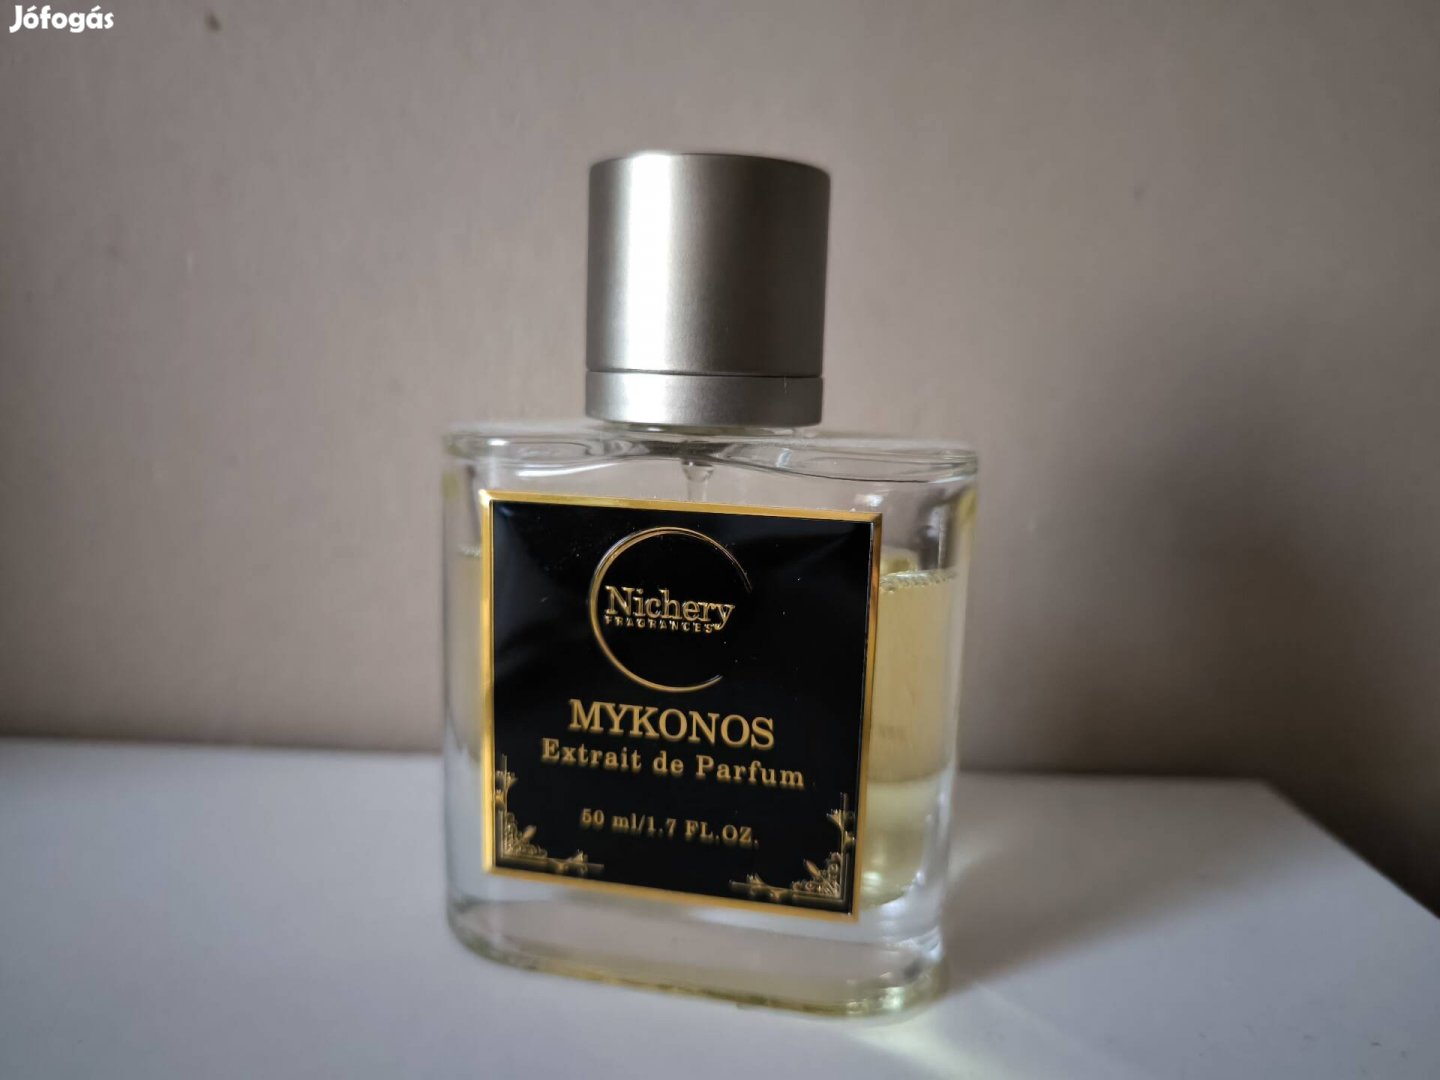 Nichery parfüm Mykonos